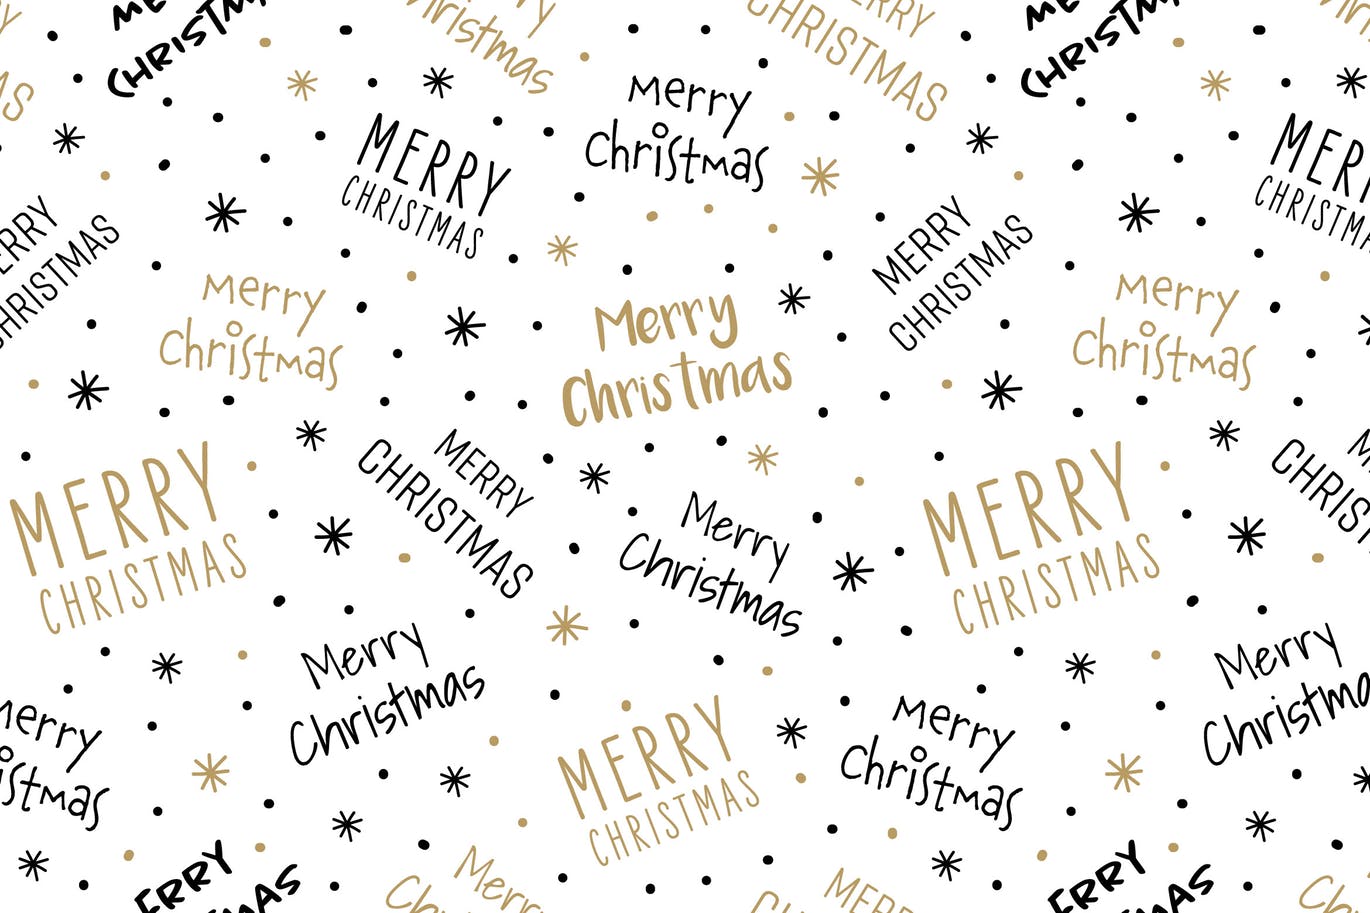 圣诞节祝福语无缝贴图设计素材 Merry Christmas greeting seamless pattern vector插图